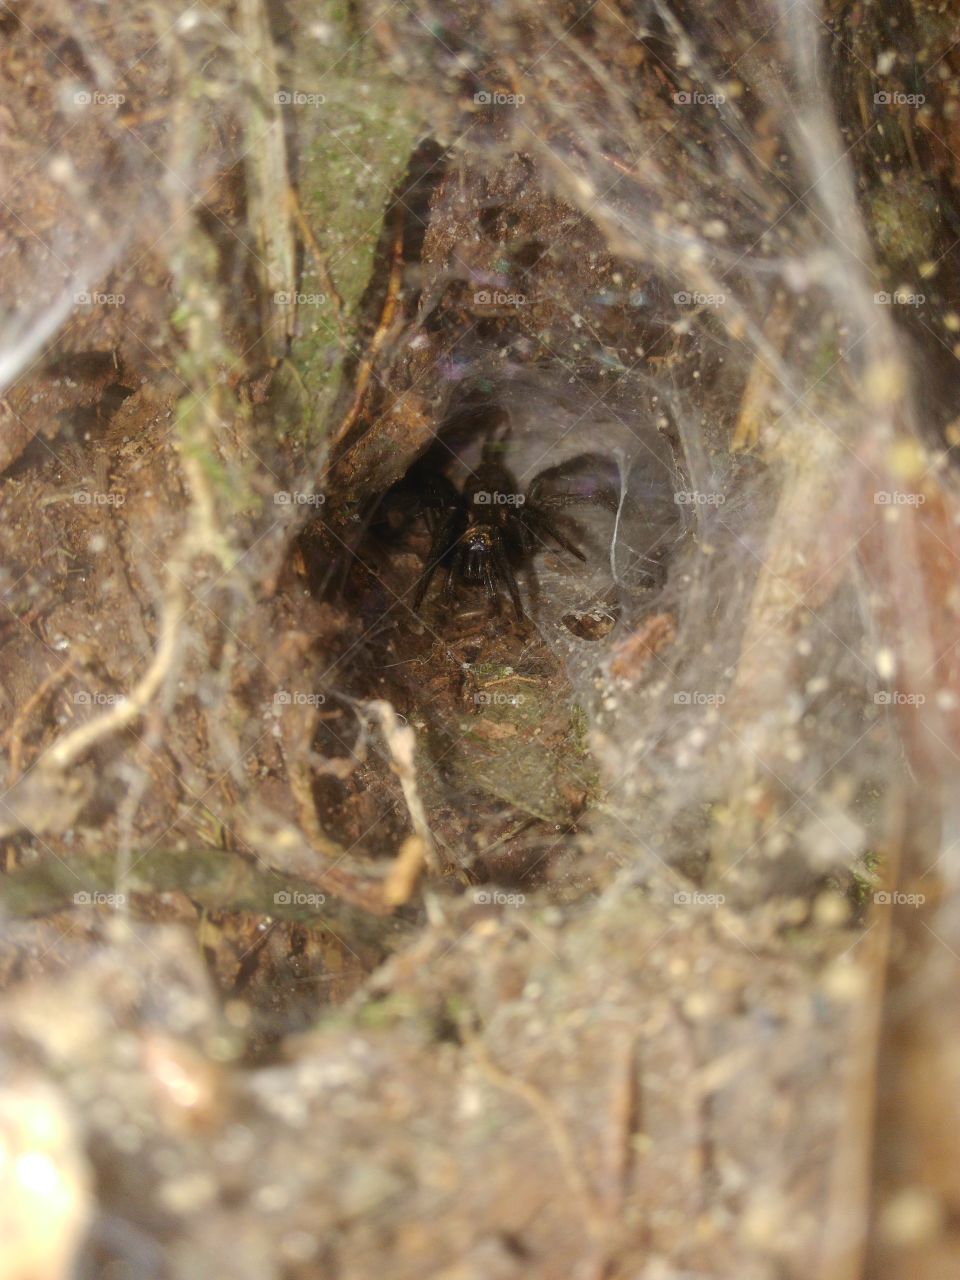 jovem aranha caranguejeira em sua toca, Amazônia.